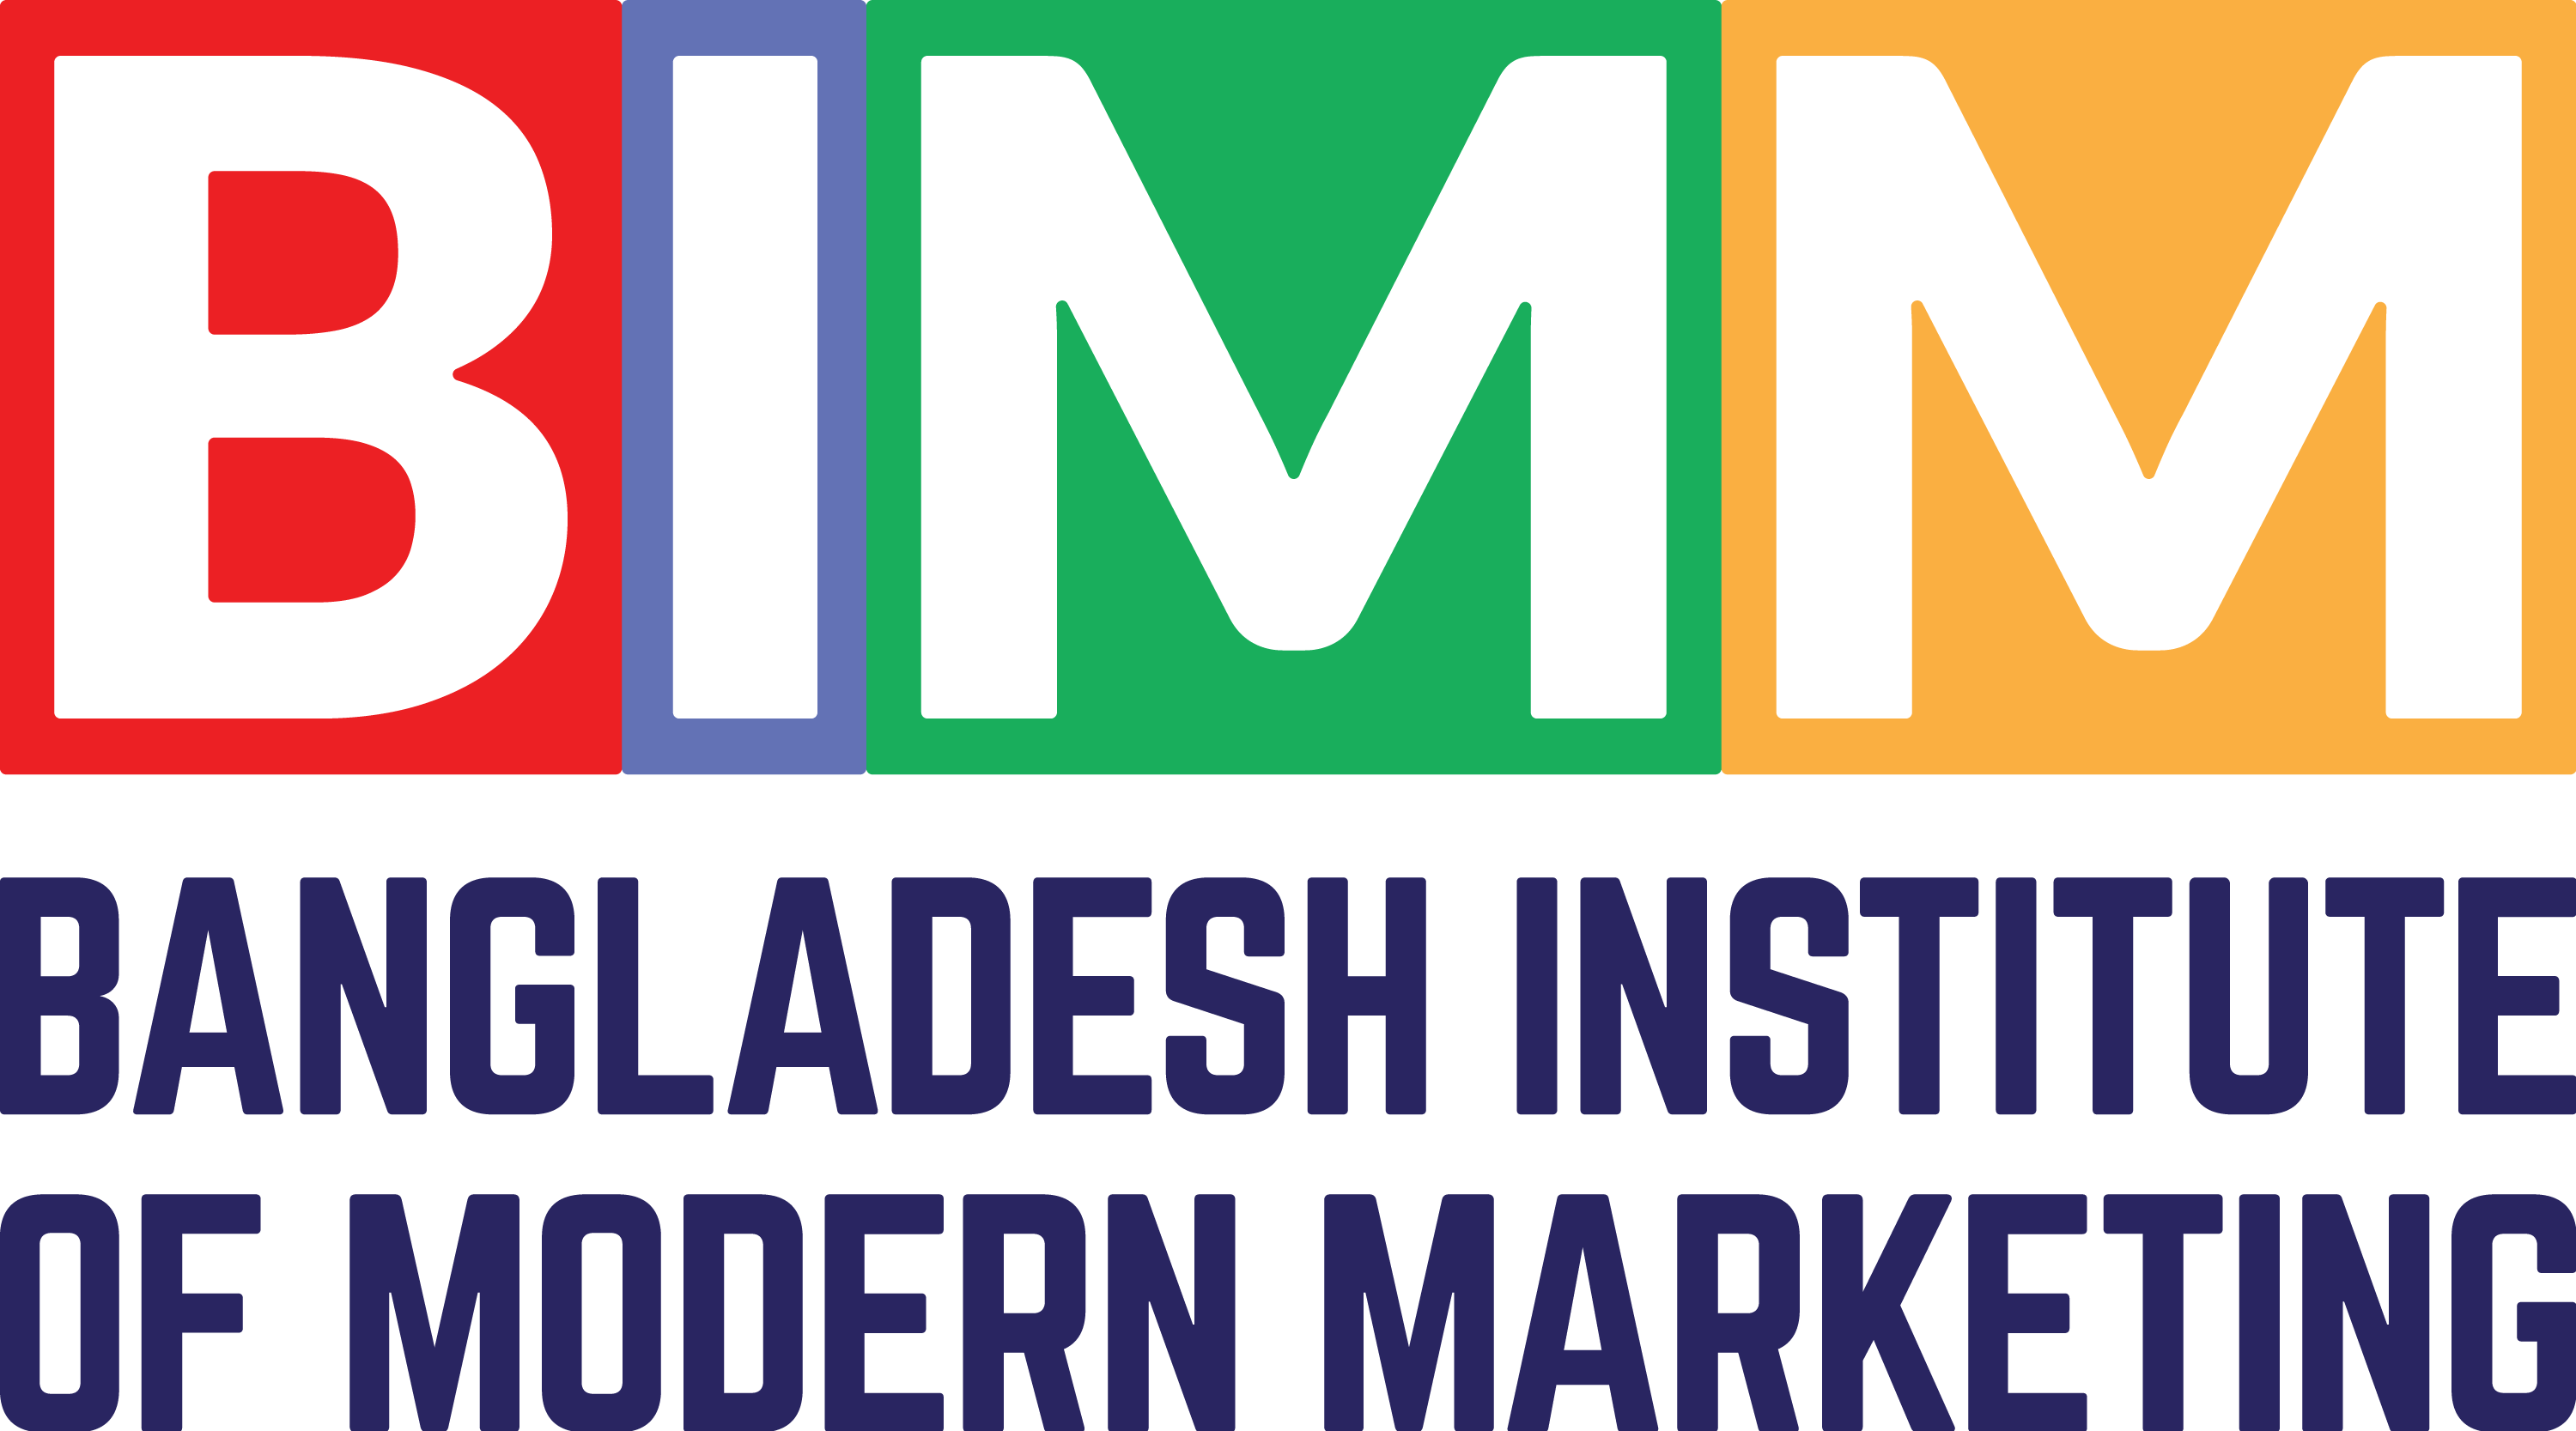 Bangladesh Institute of Modern Marketing - BIMM